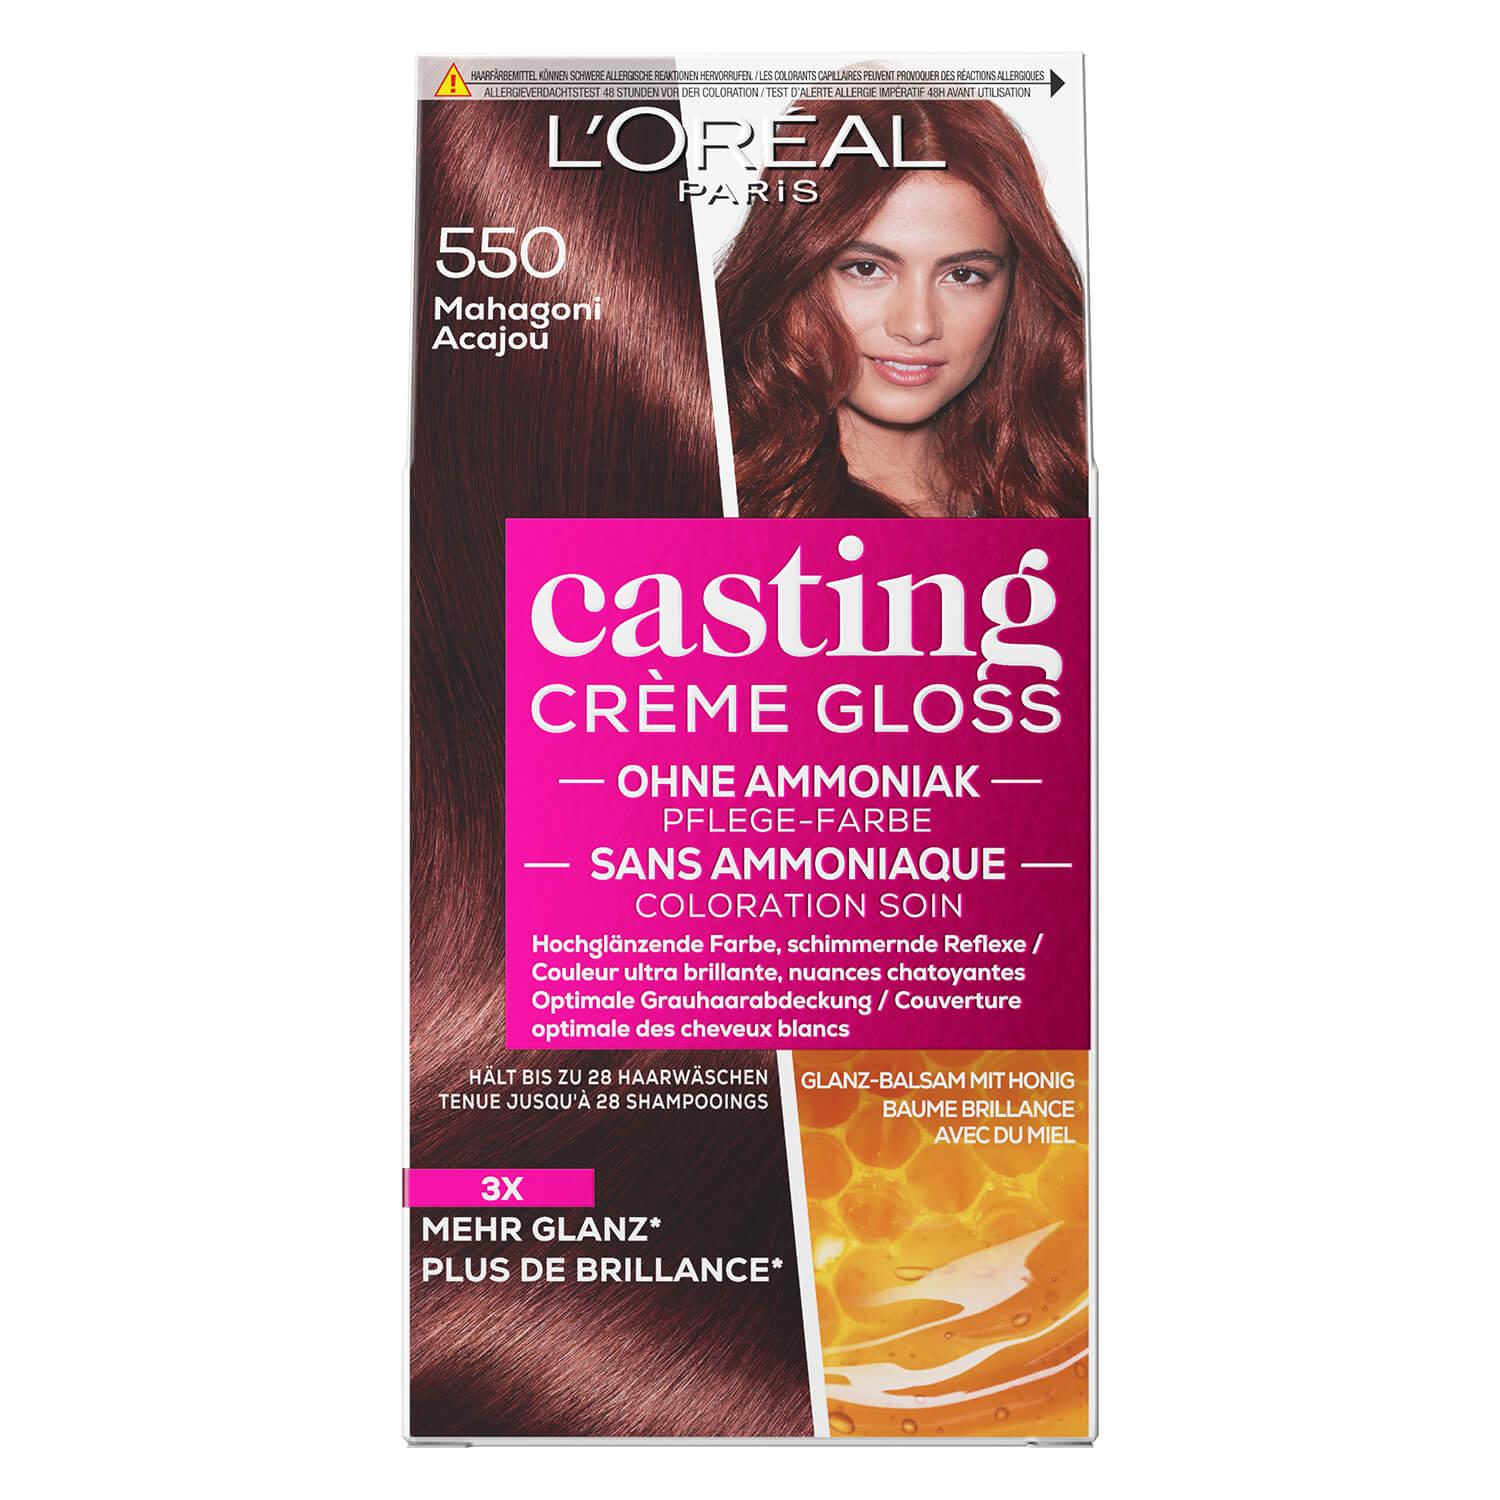 LOréal Casting - Crème Gloss 550 Mahagoni